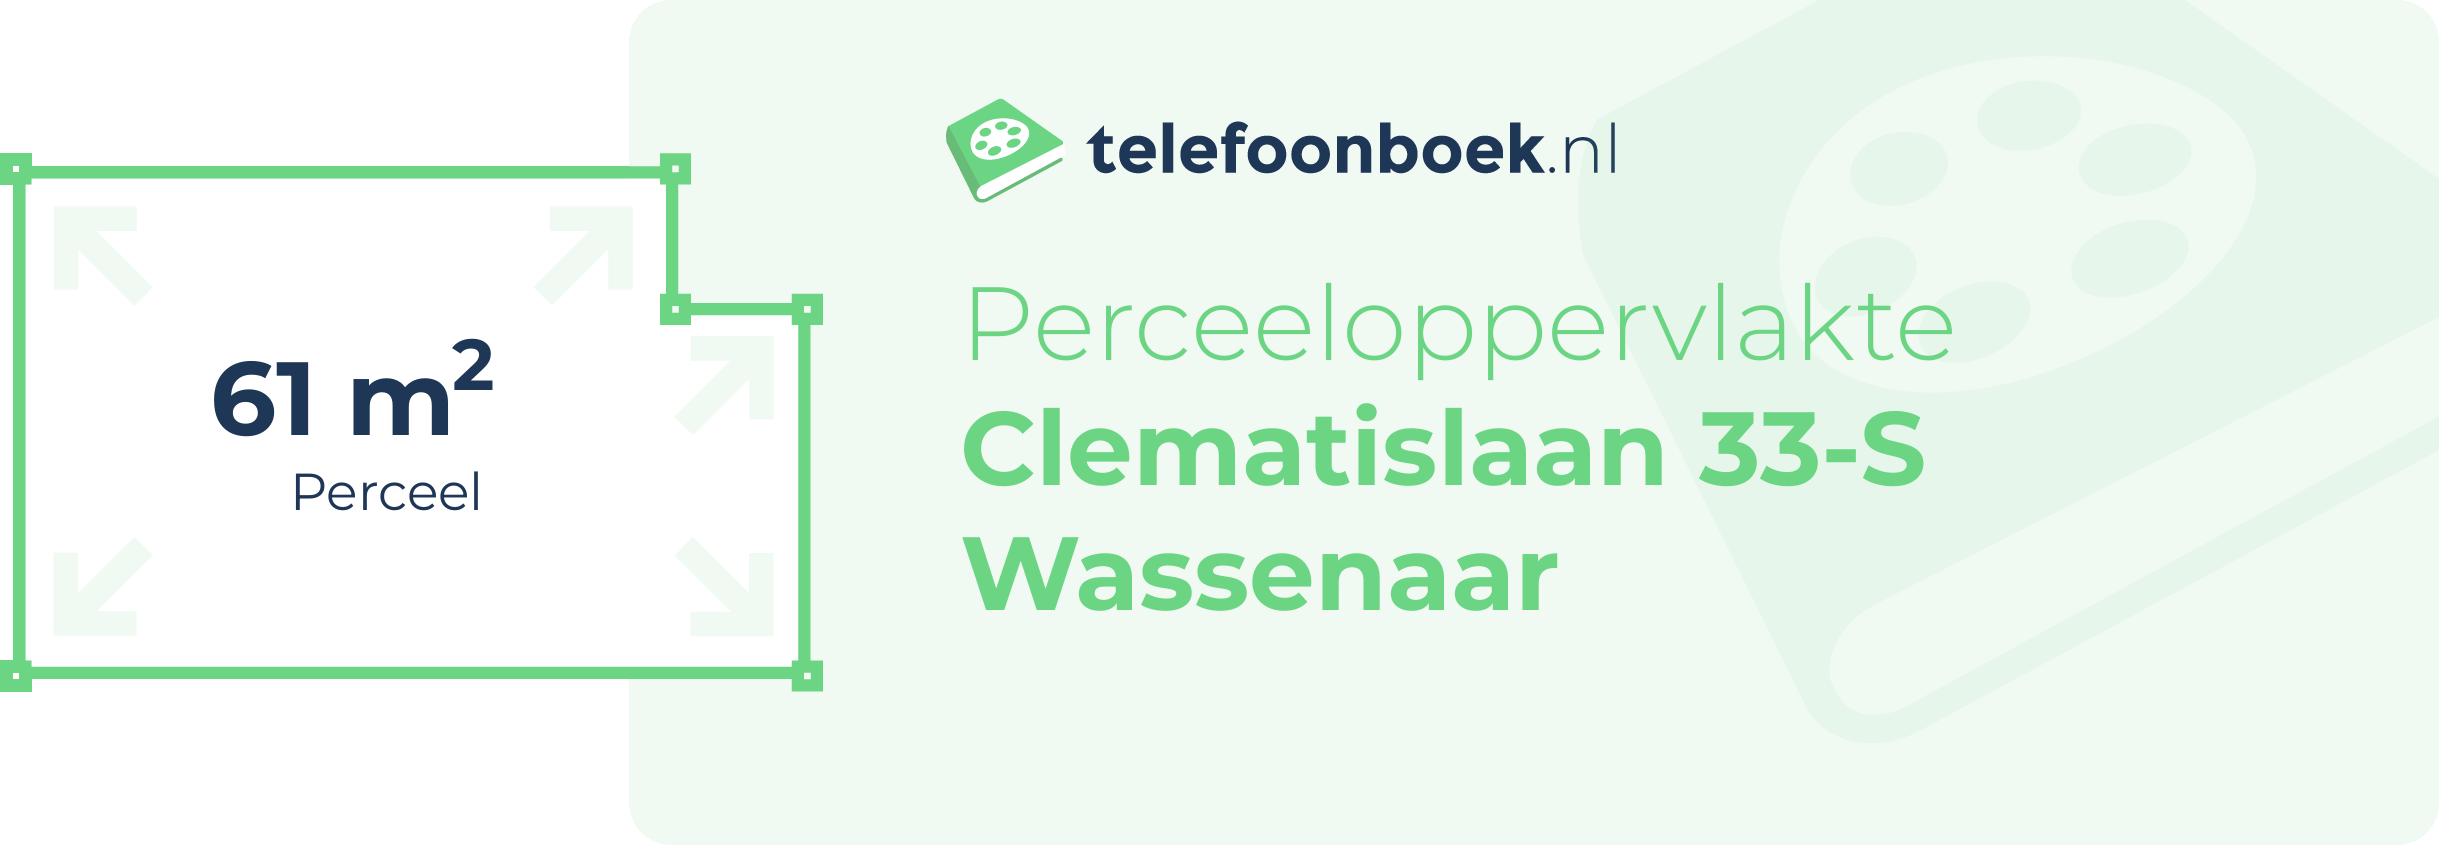 Perceeloppervlakte Clematislaan 33-S Wassenaar